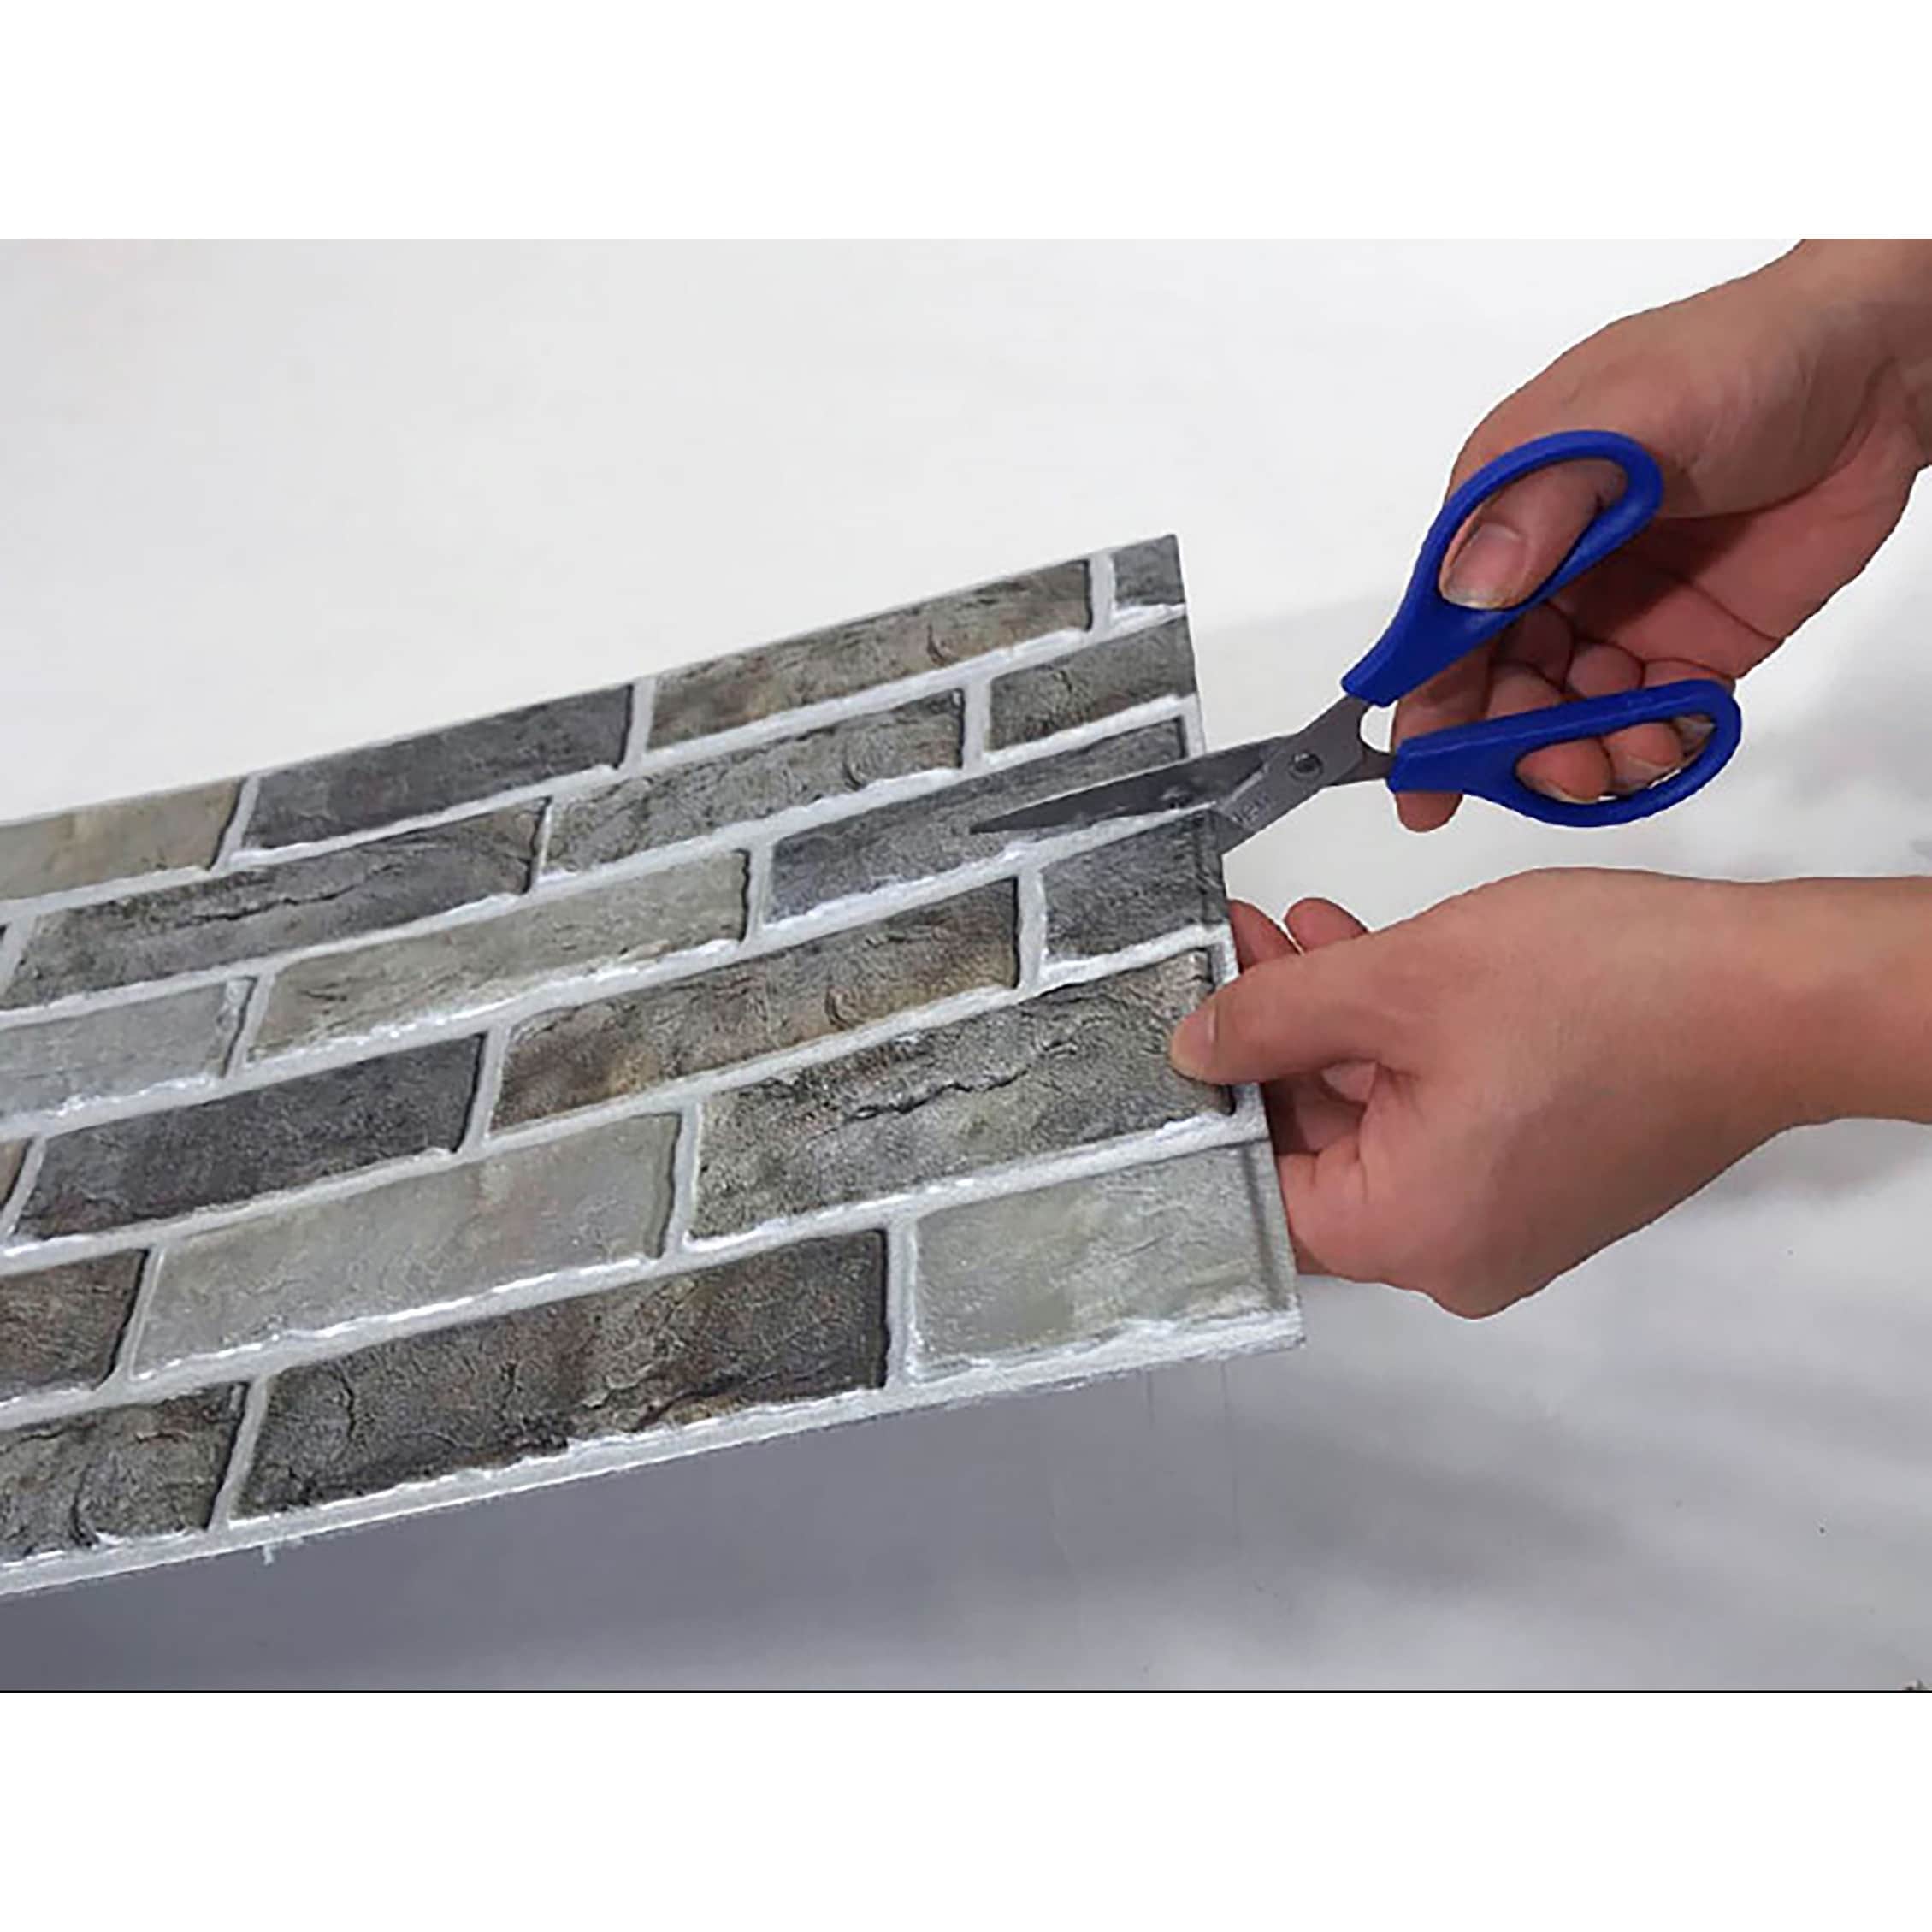 Ejoy 3D PVC Peel and Stick Mosaic Tile Sticker, JM521, 12 in. x 12